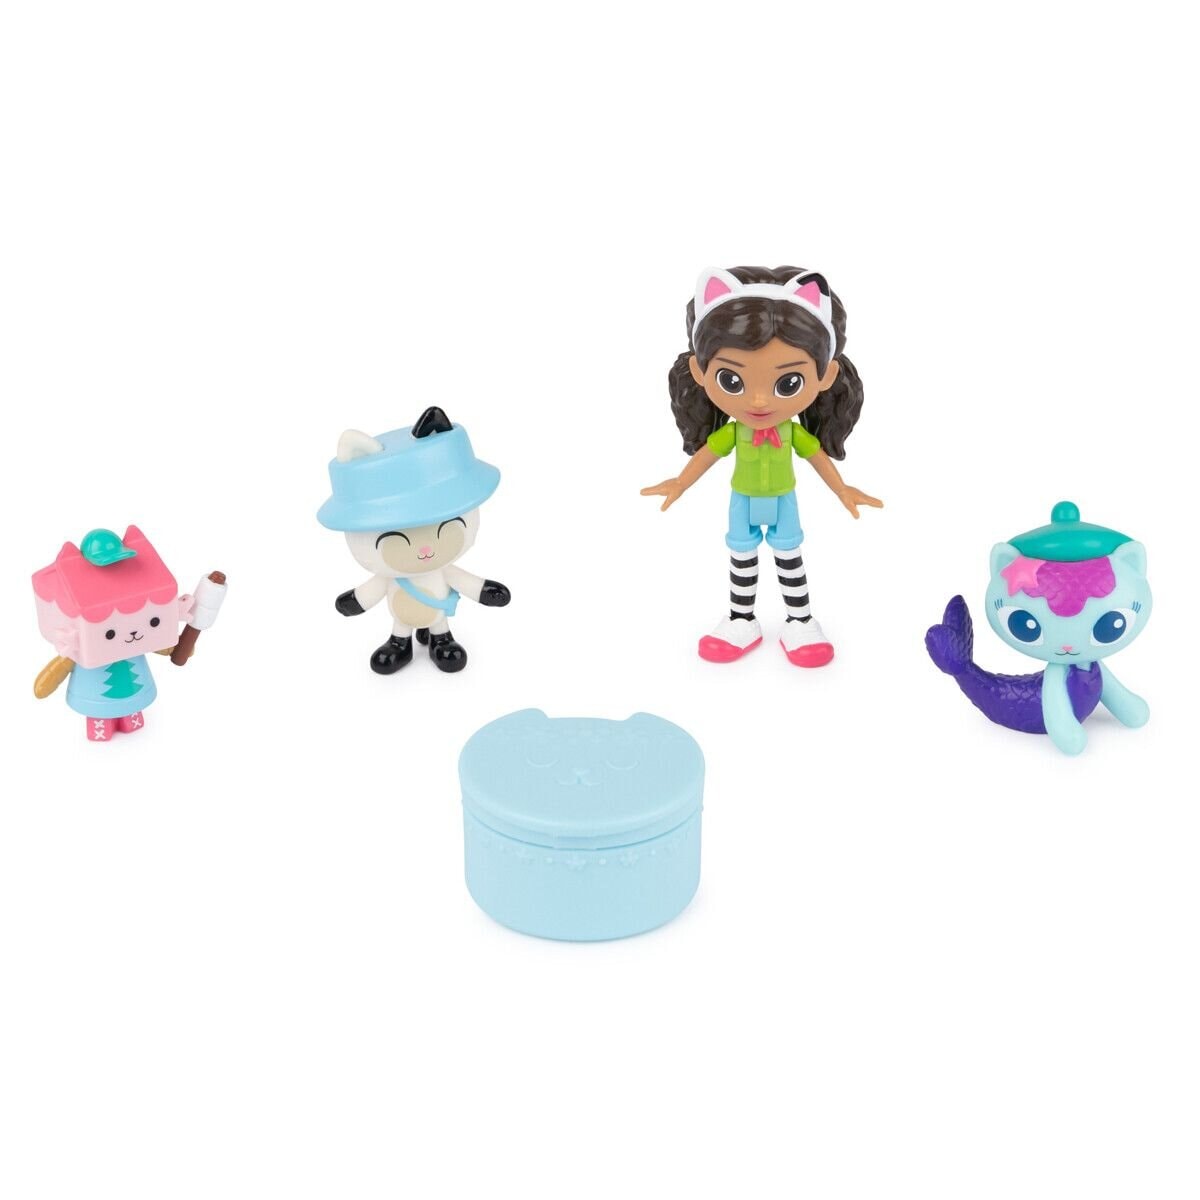 Gabby's Dollhouse - Speelfiguren 5 stuks